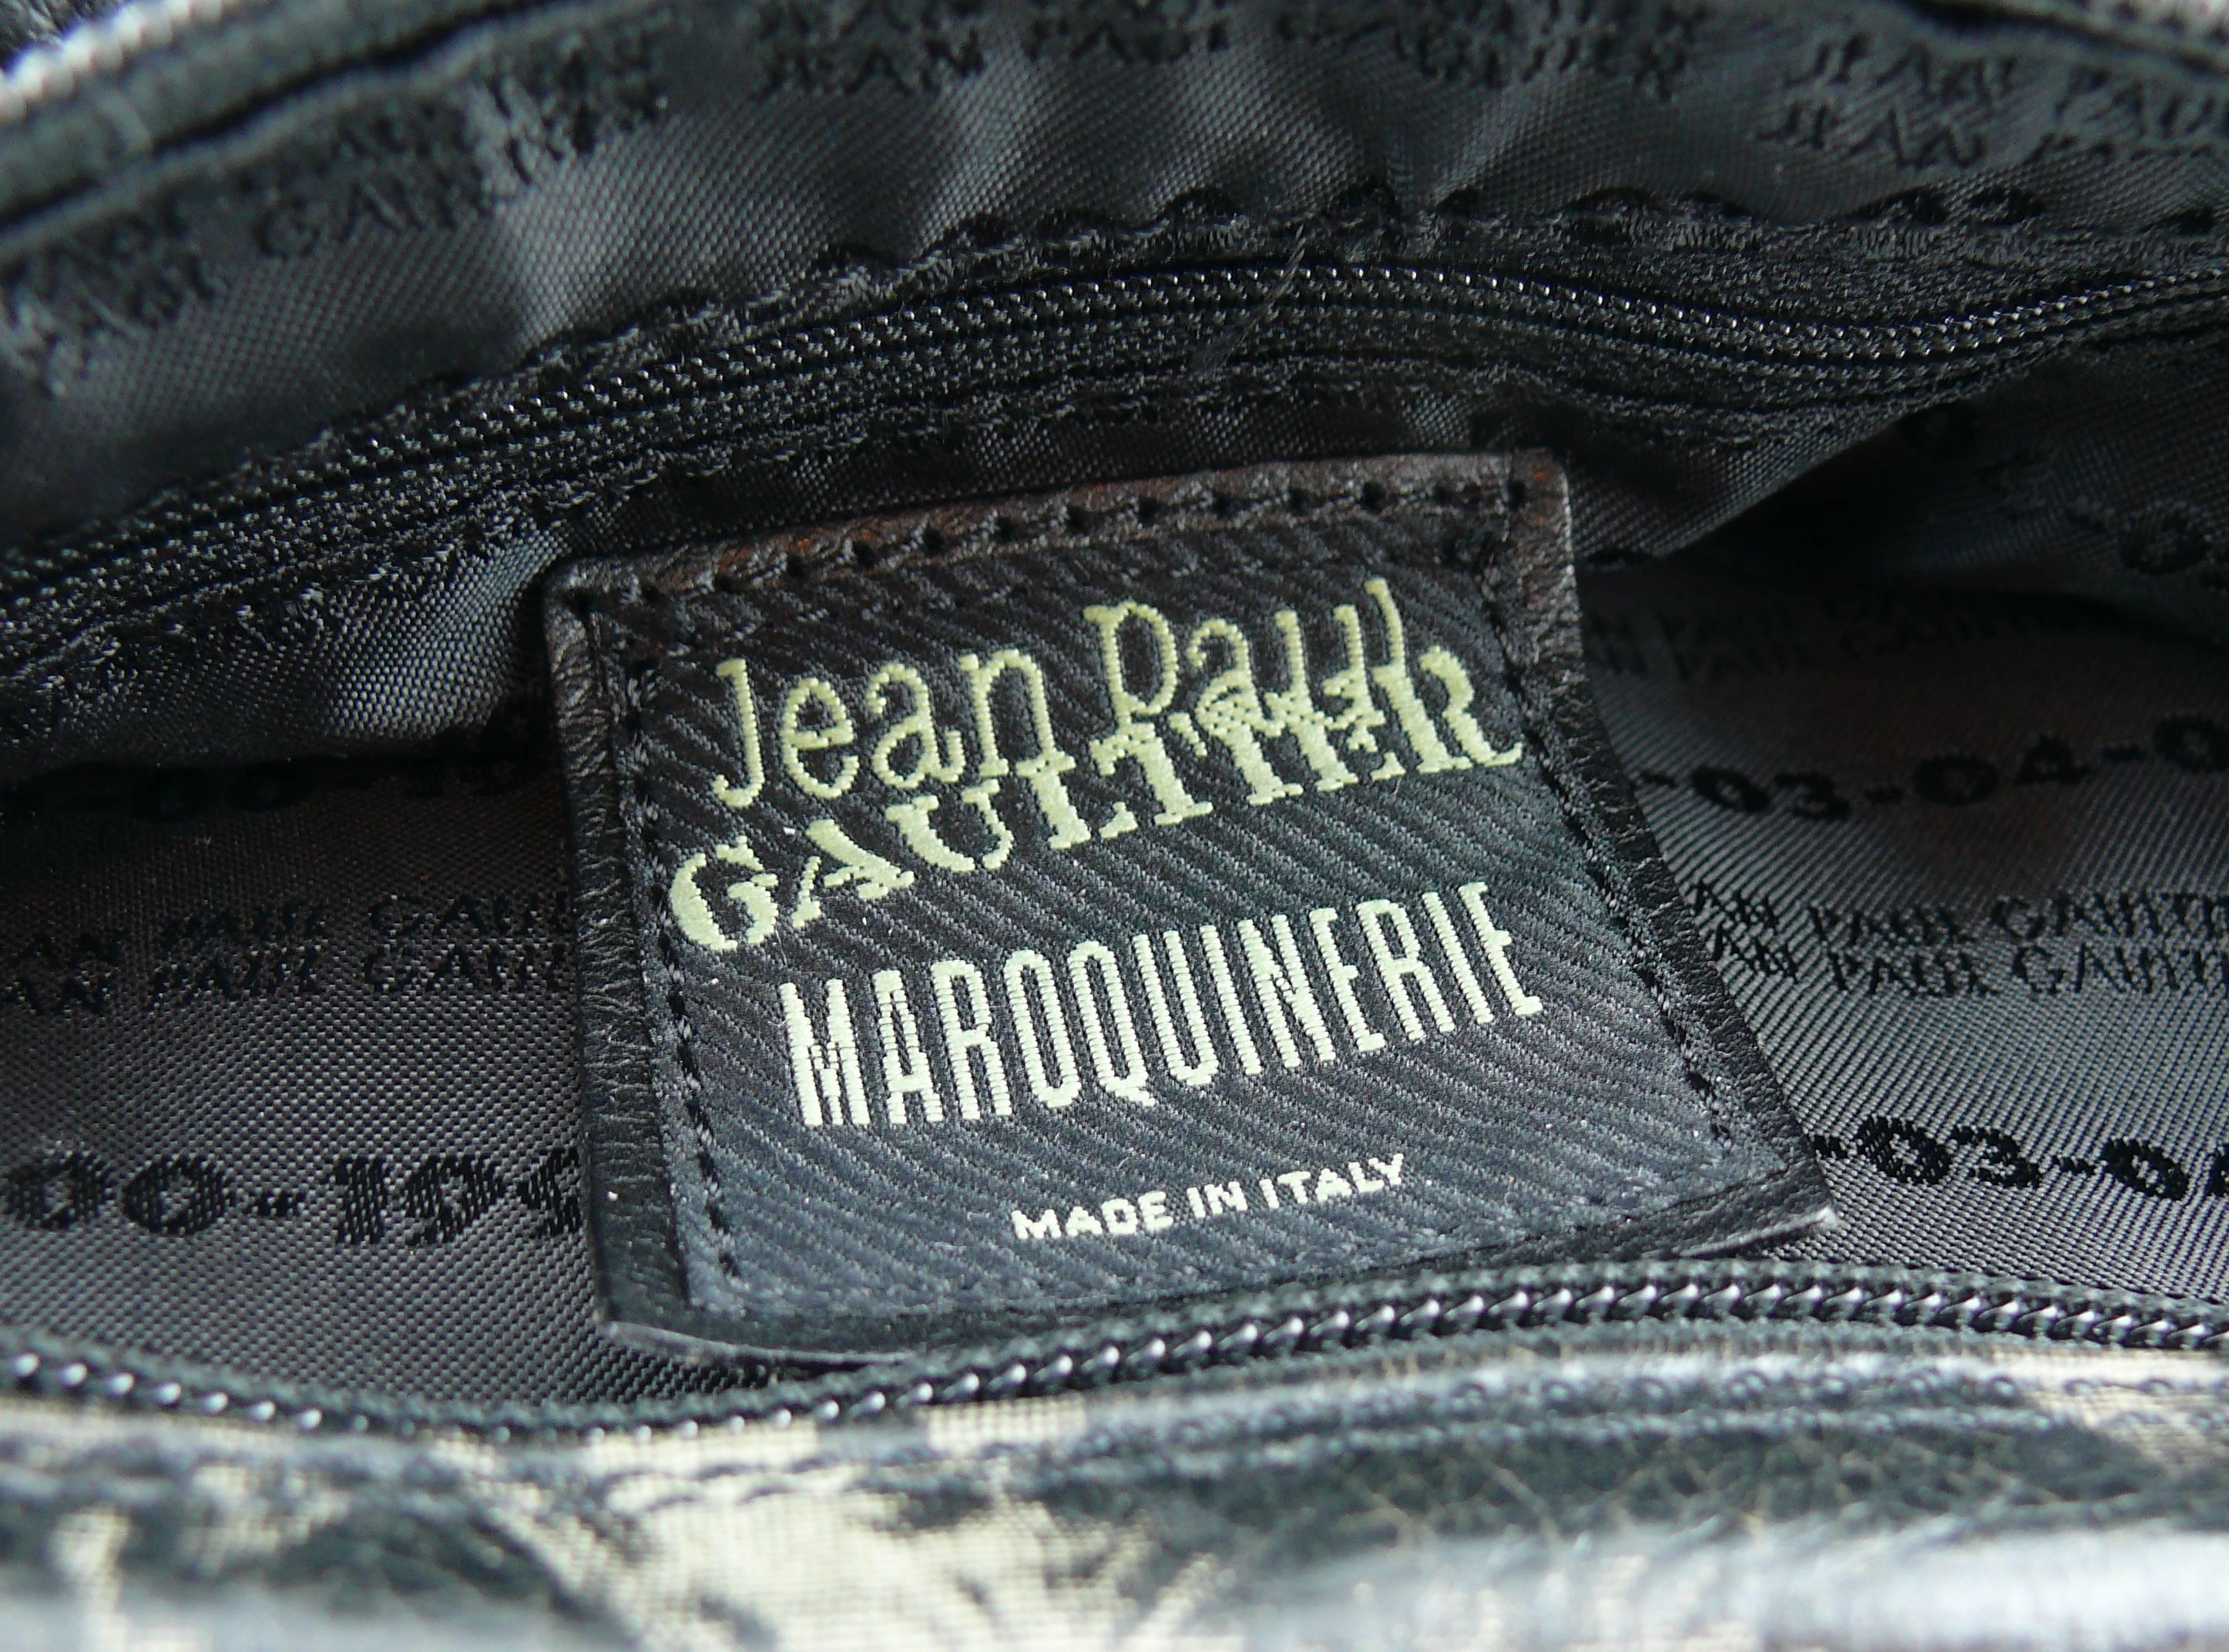 Jean Paul Gaultier Vintage Retro Dietrich Print Leather Shoulder Bag 1